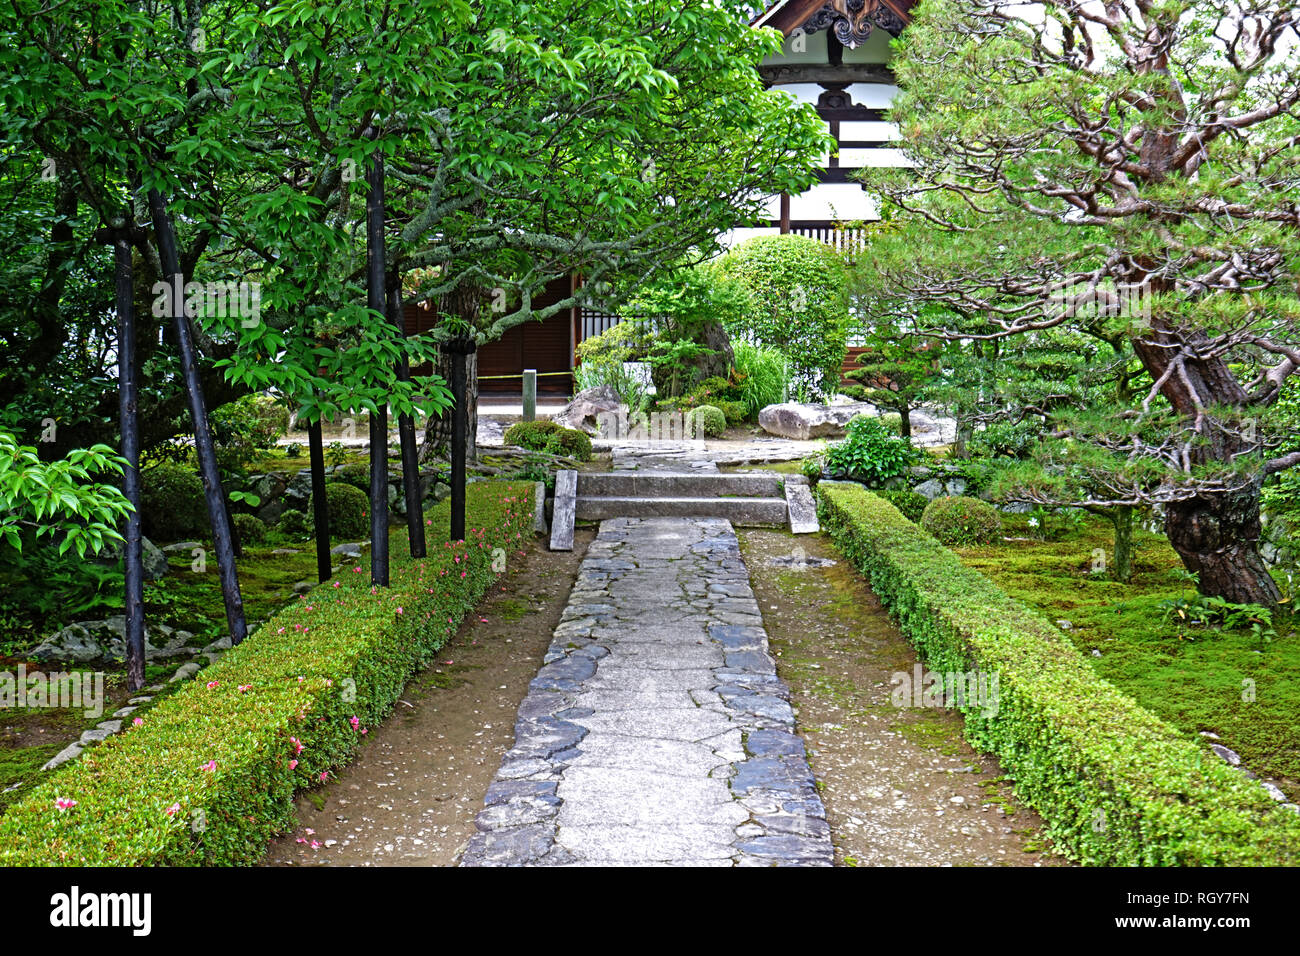 Le japon jardin zen traditionnel, Gray Stone Road, plantes vertes et arbres Banque D'Images